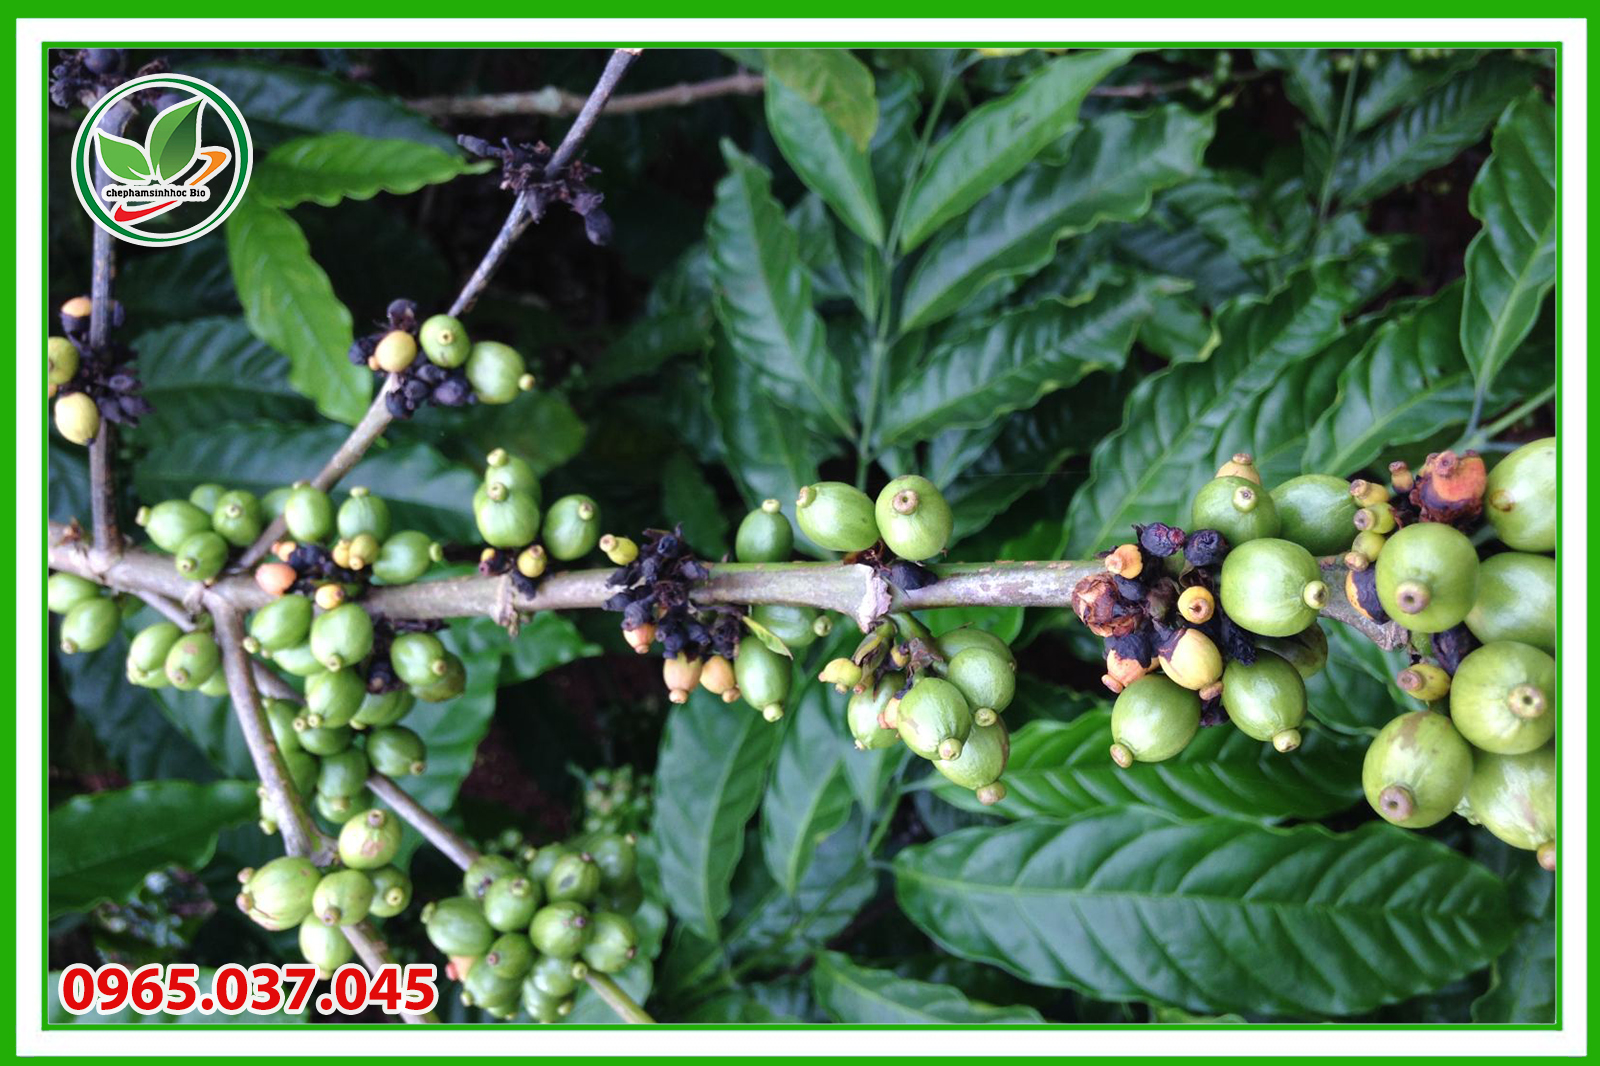 Cây cà phê được trồng nhiều ở nước ta